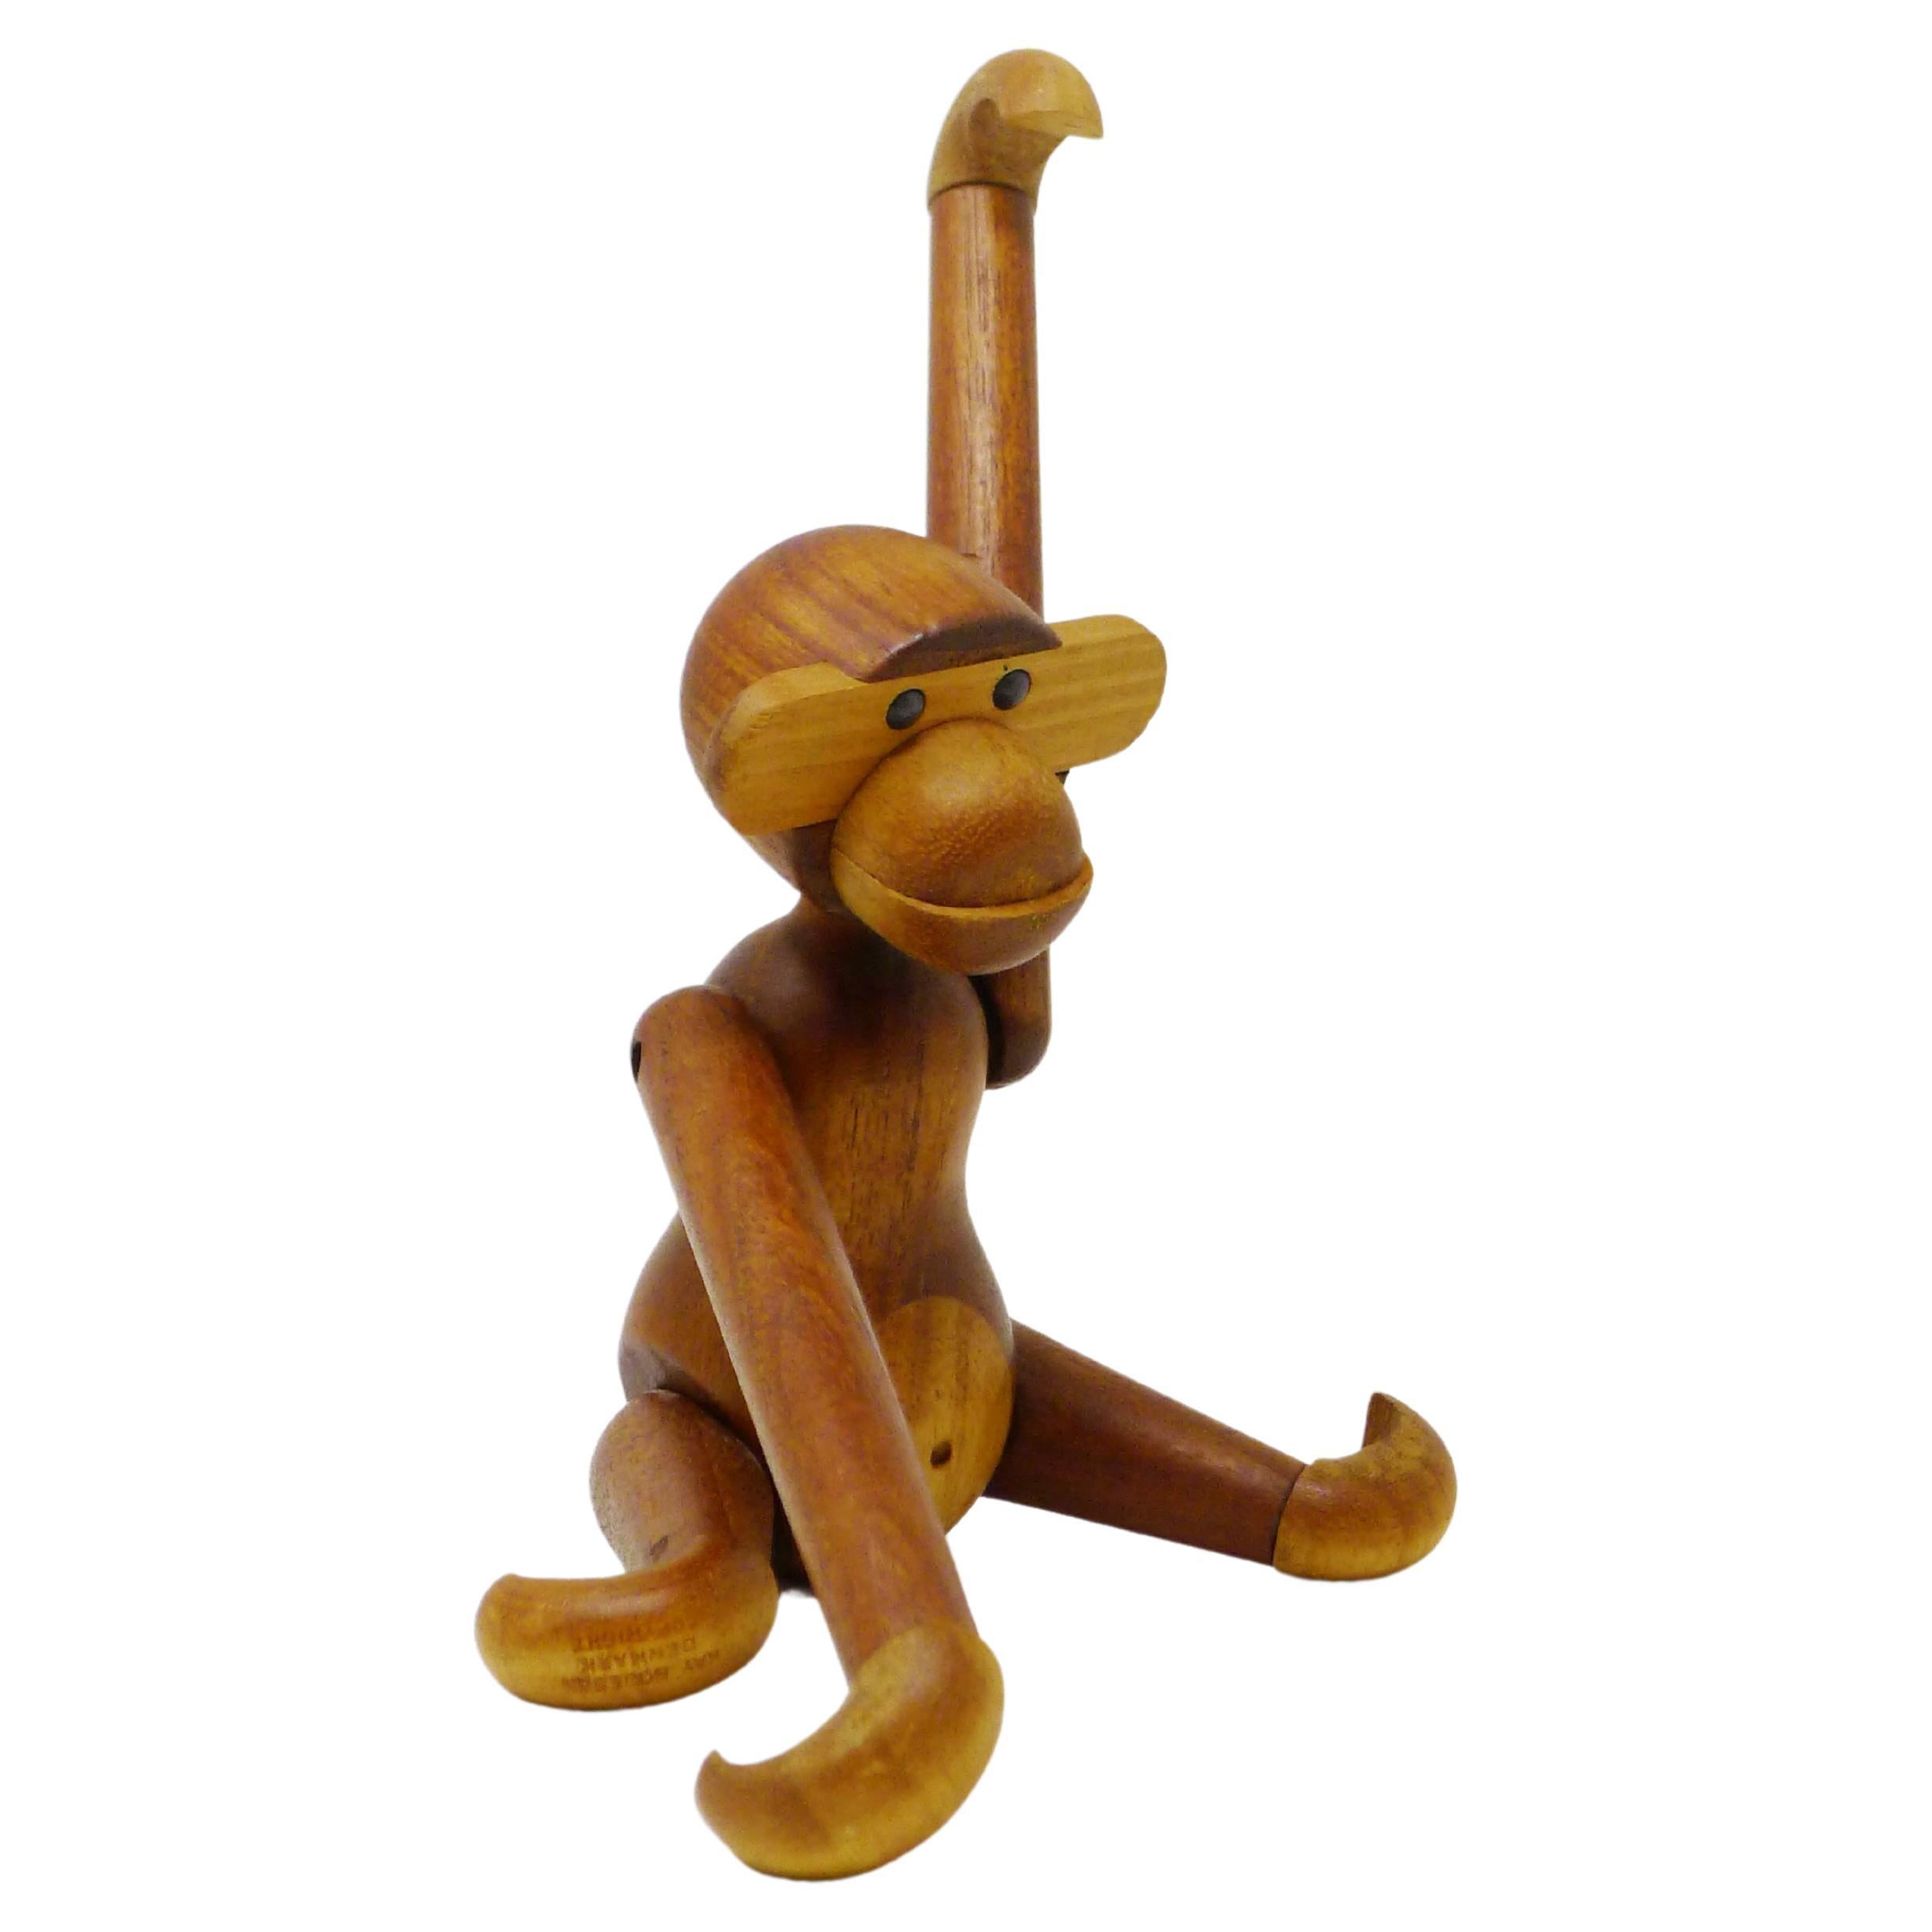 Kay Bojesen, Original Vintage Small Monkey, teak and limba wood, 1950s, signed